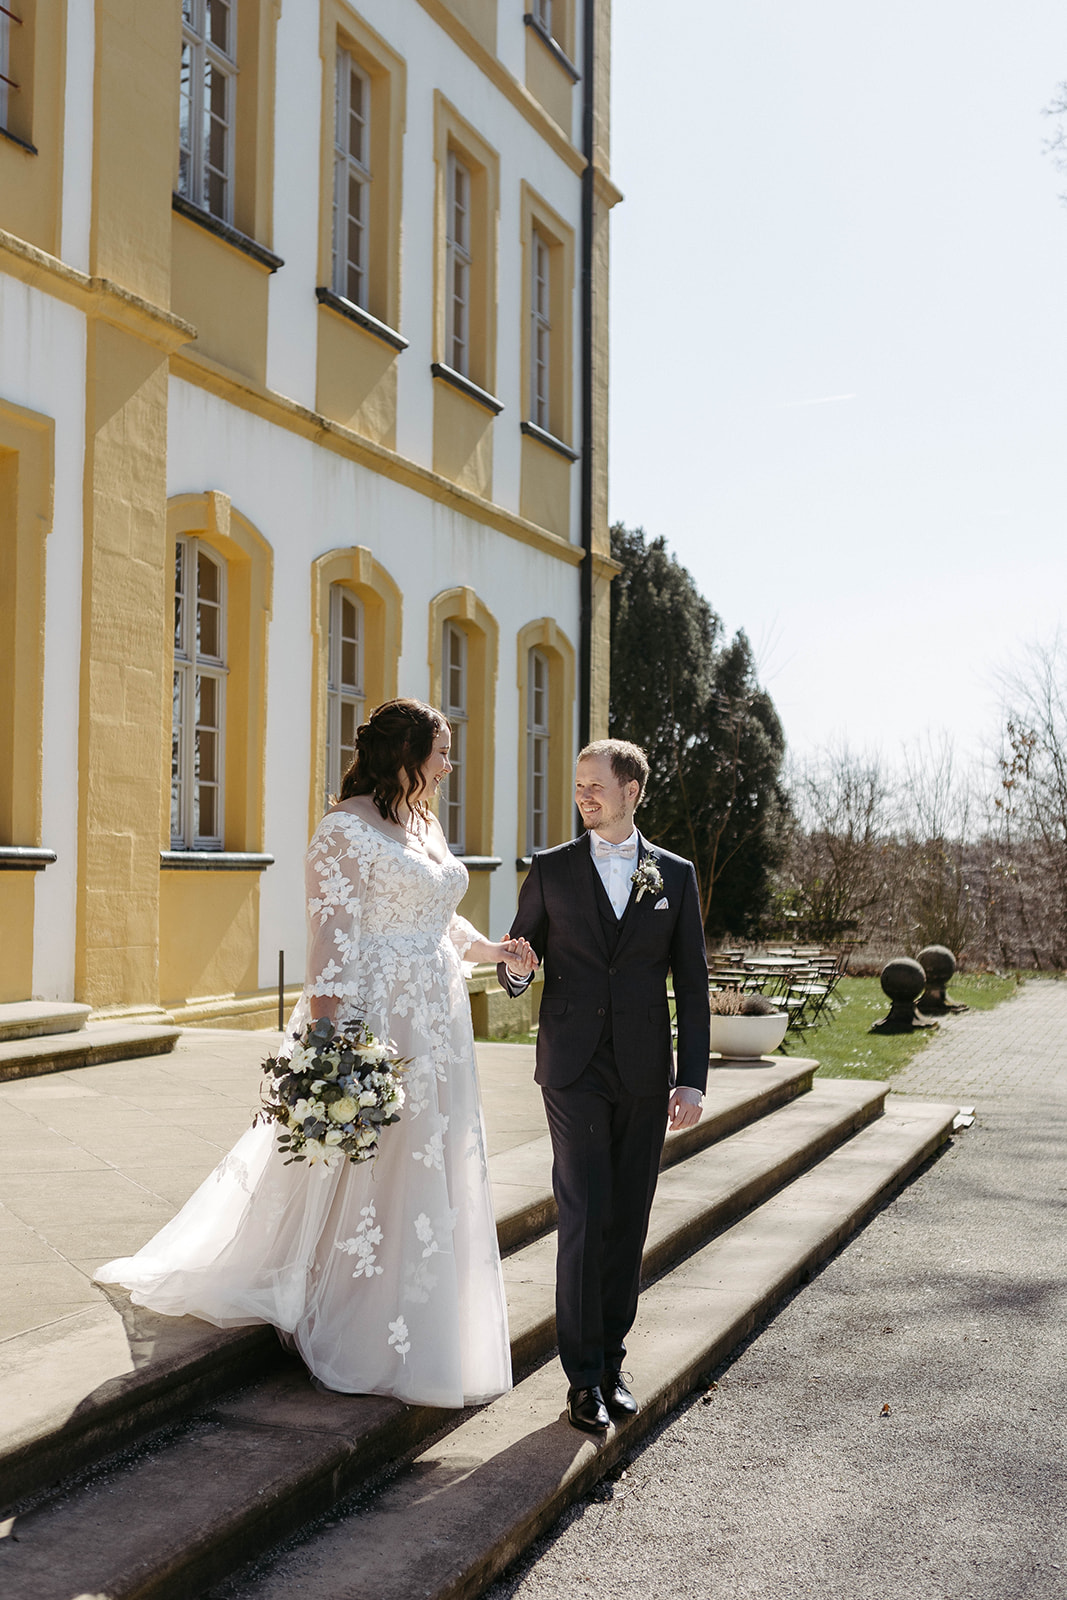 Verliebte Blicke: Hochzeitspaar inmitten der traumhaften Kulisse des Schlosses Jägersburg